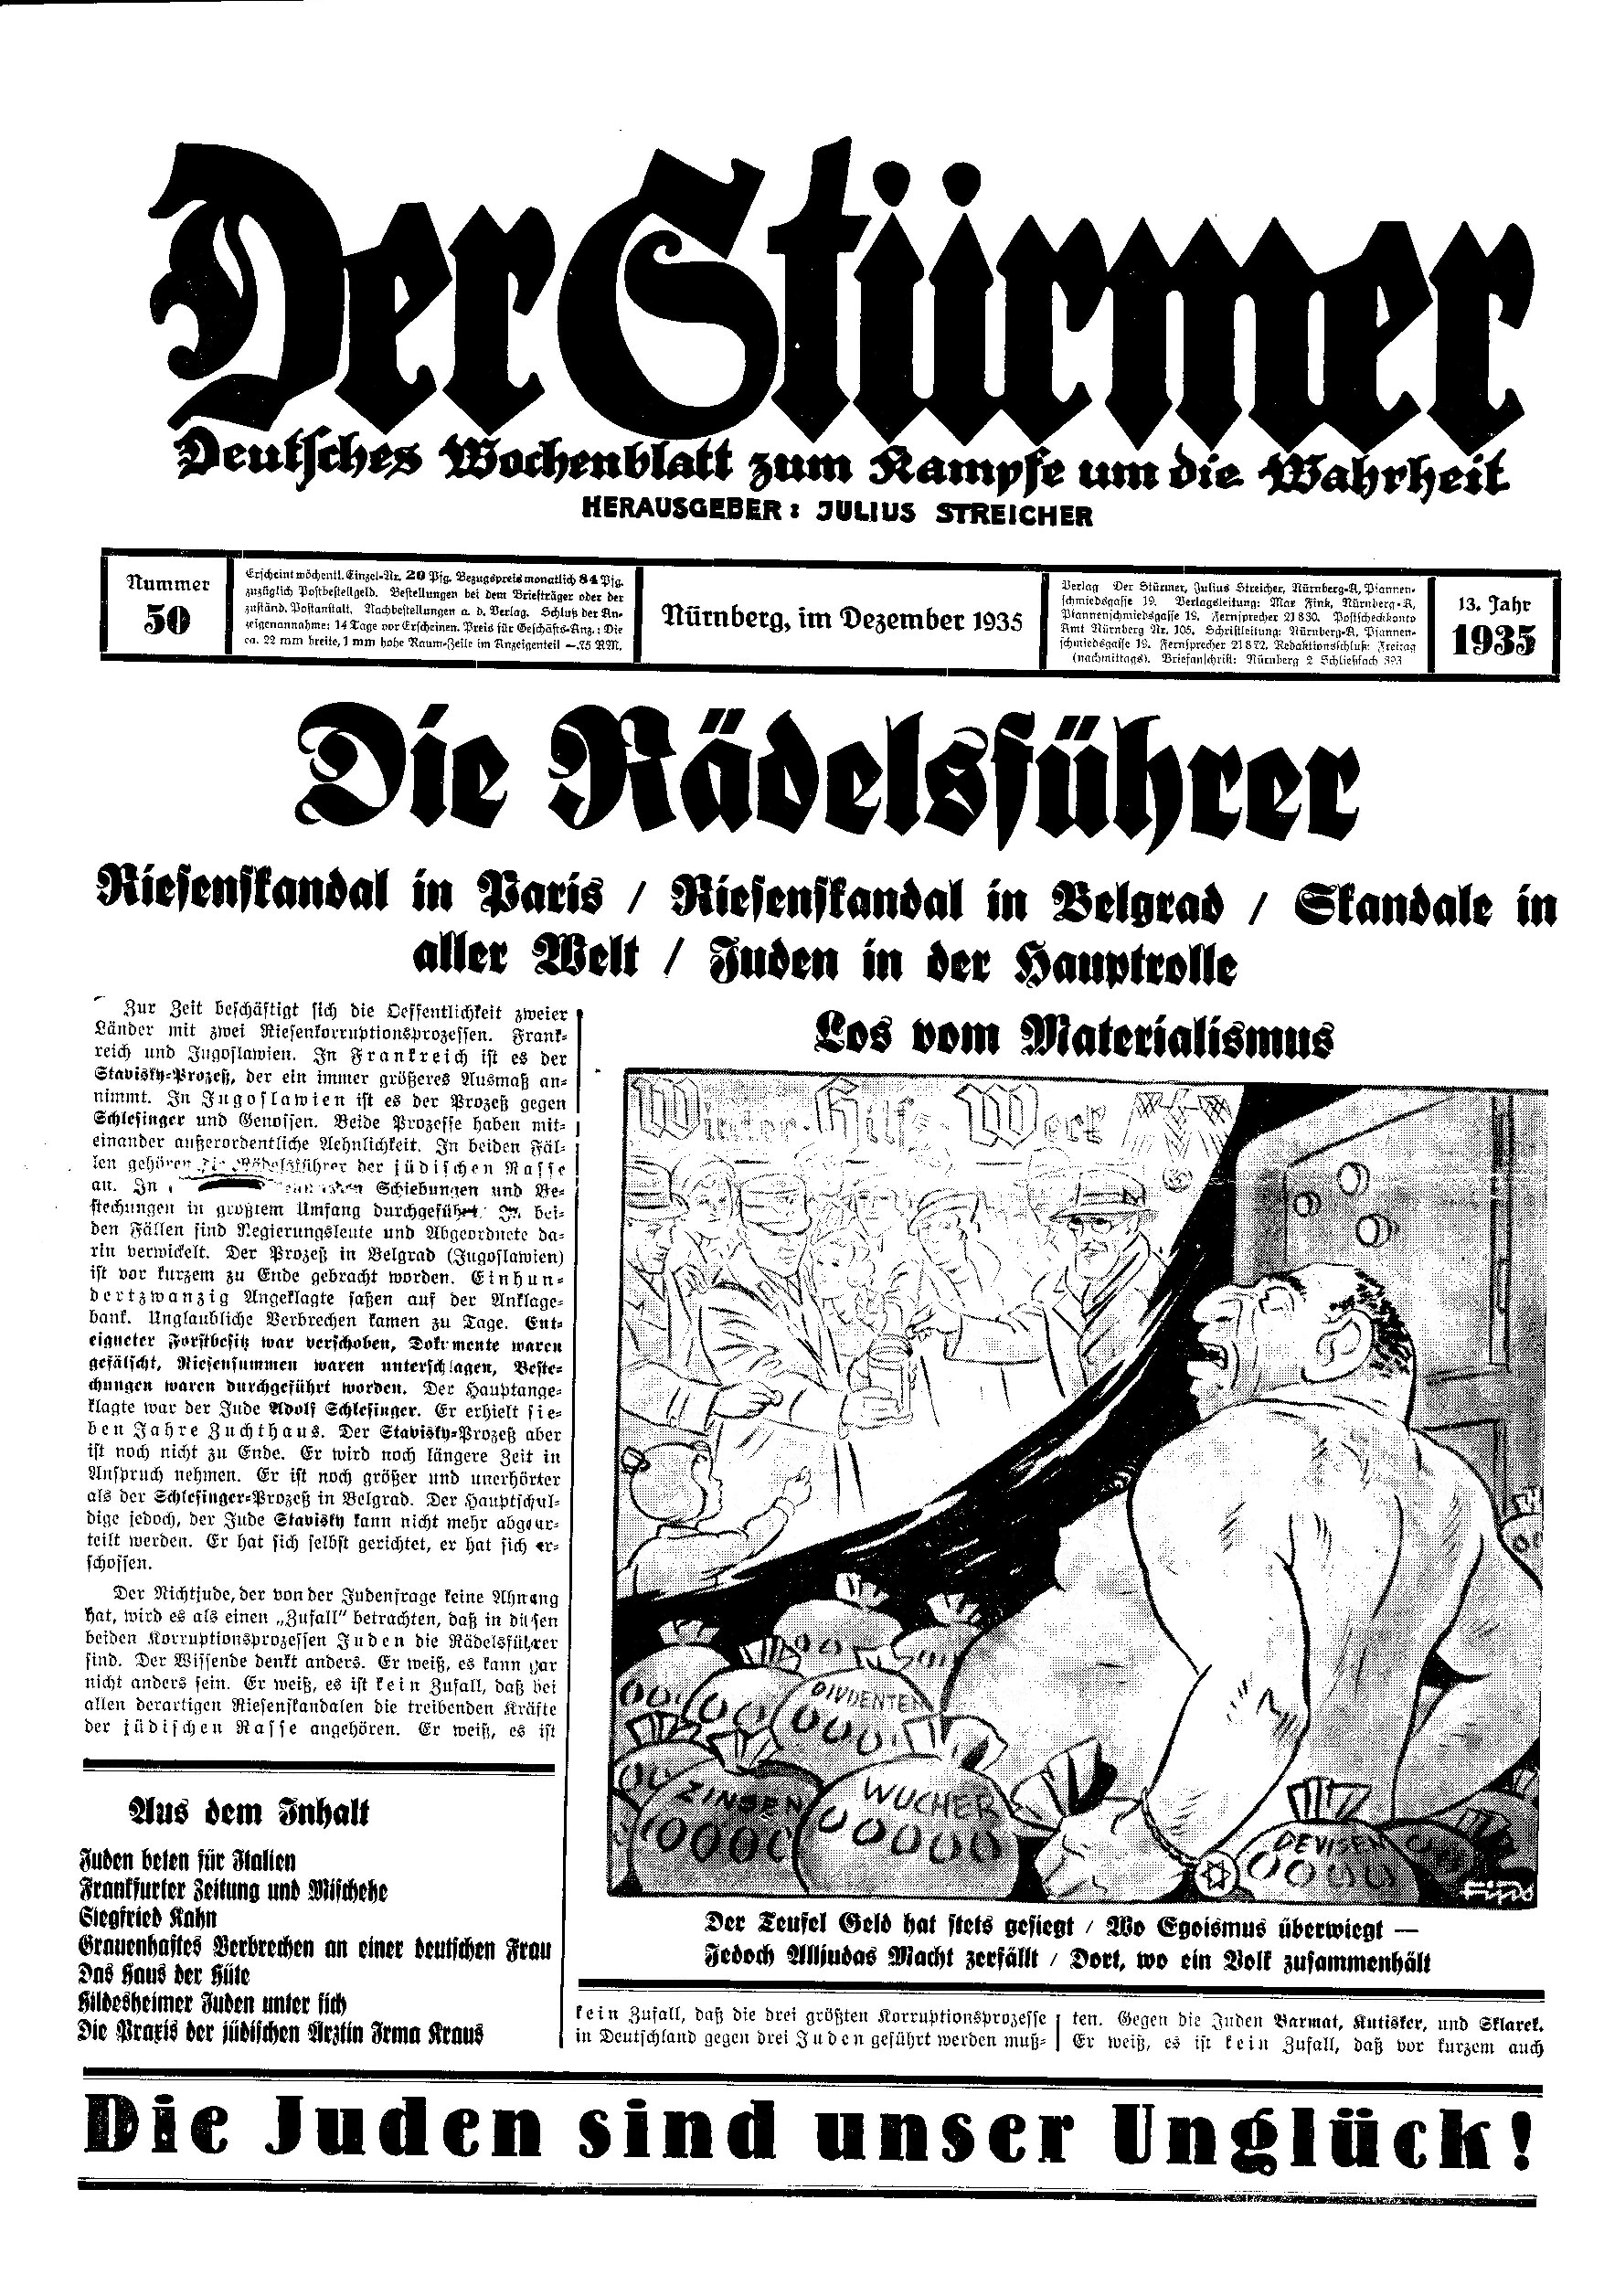 Der Stürmer - 1935 Nr. 50 - Die Rädelsführer